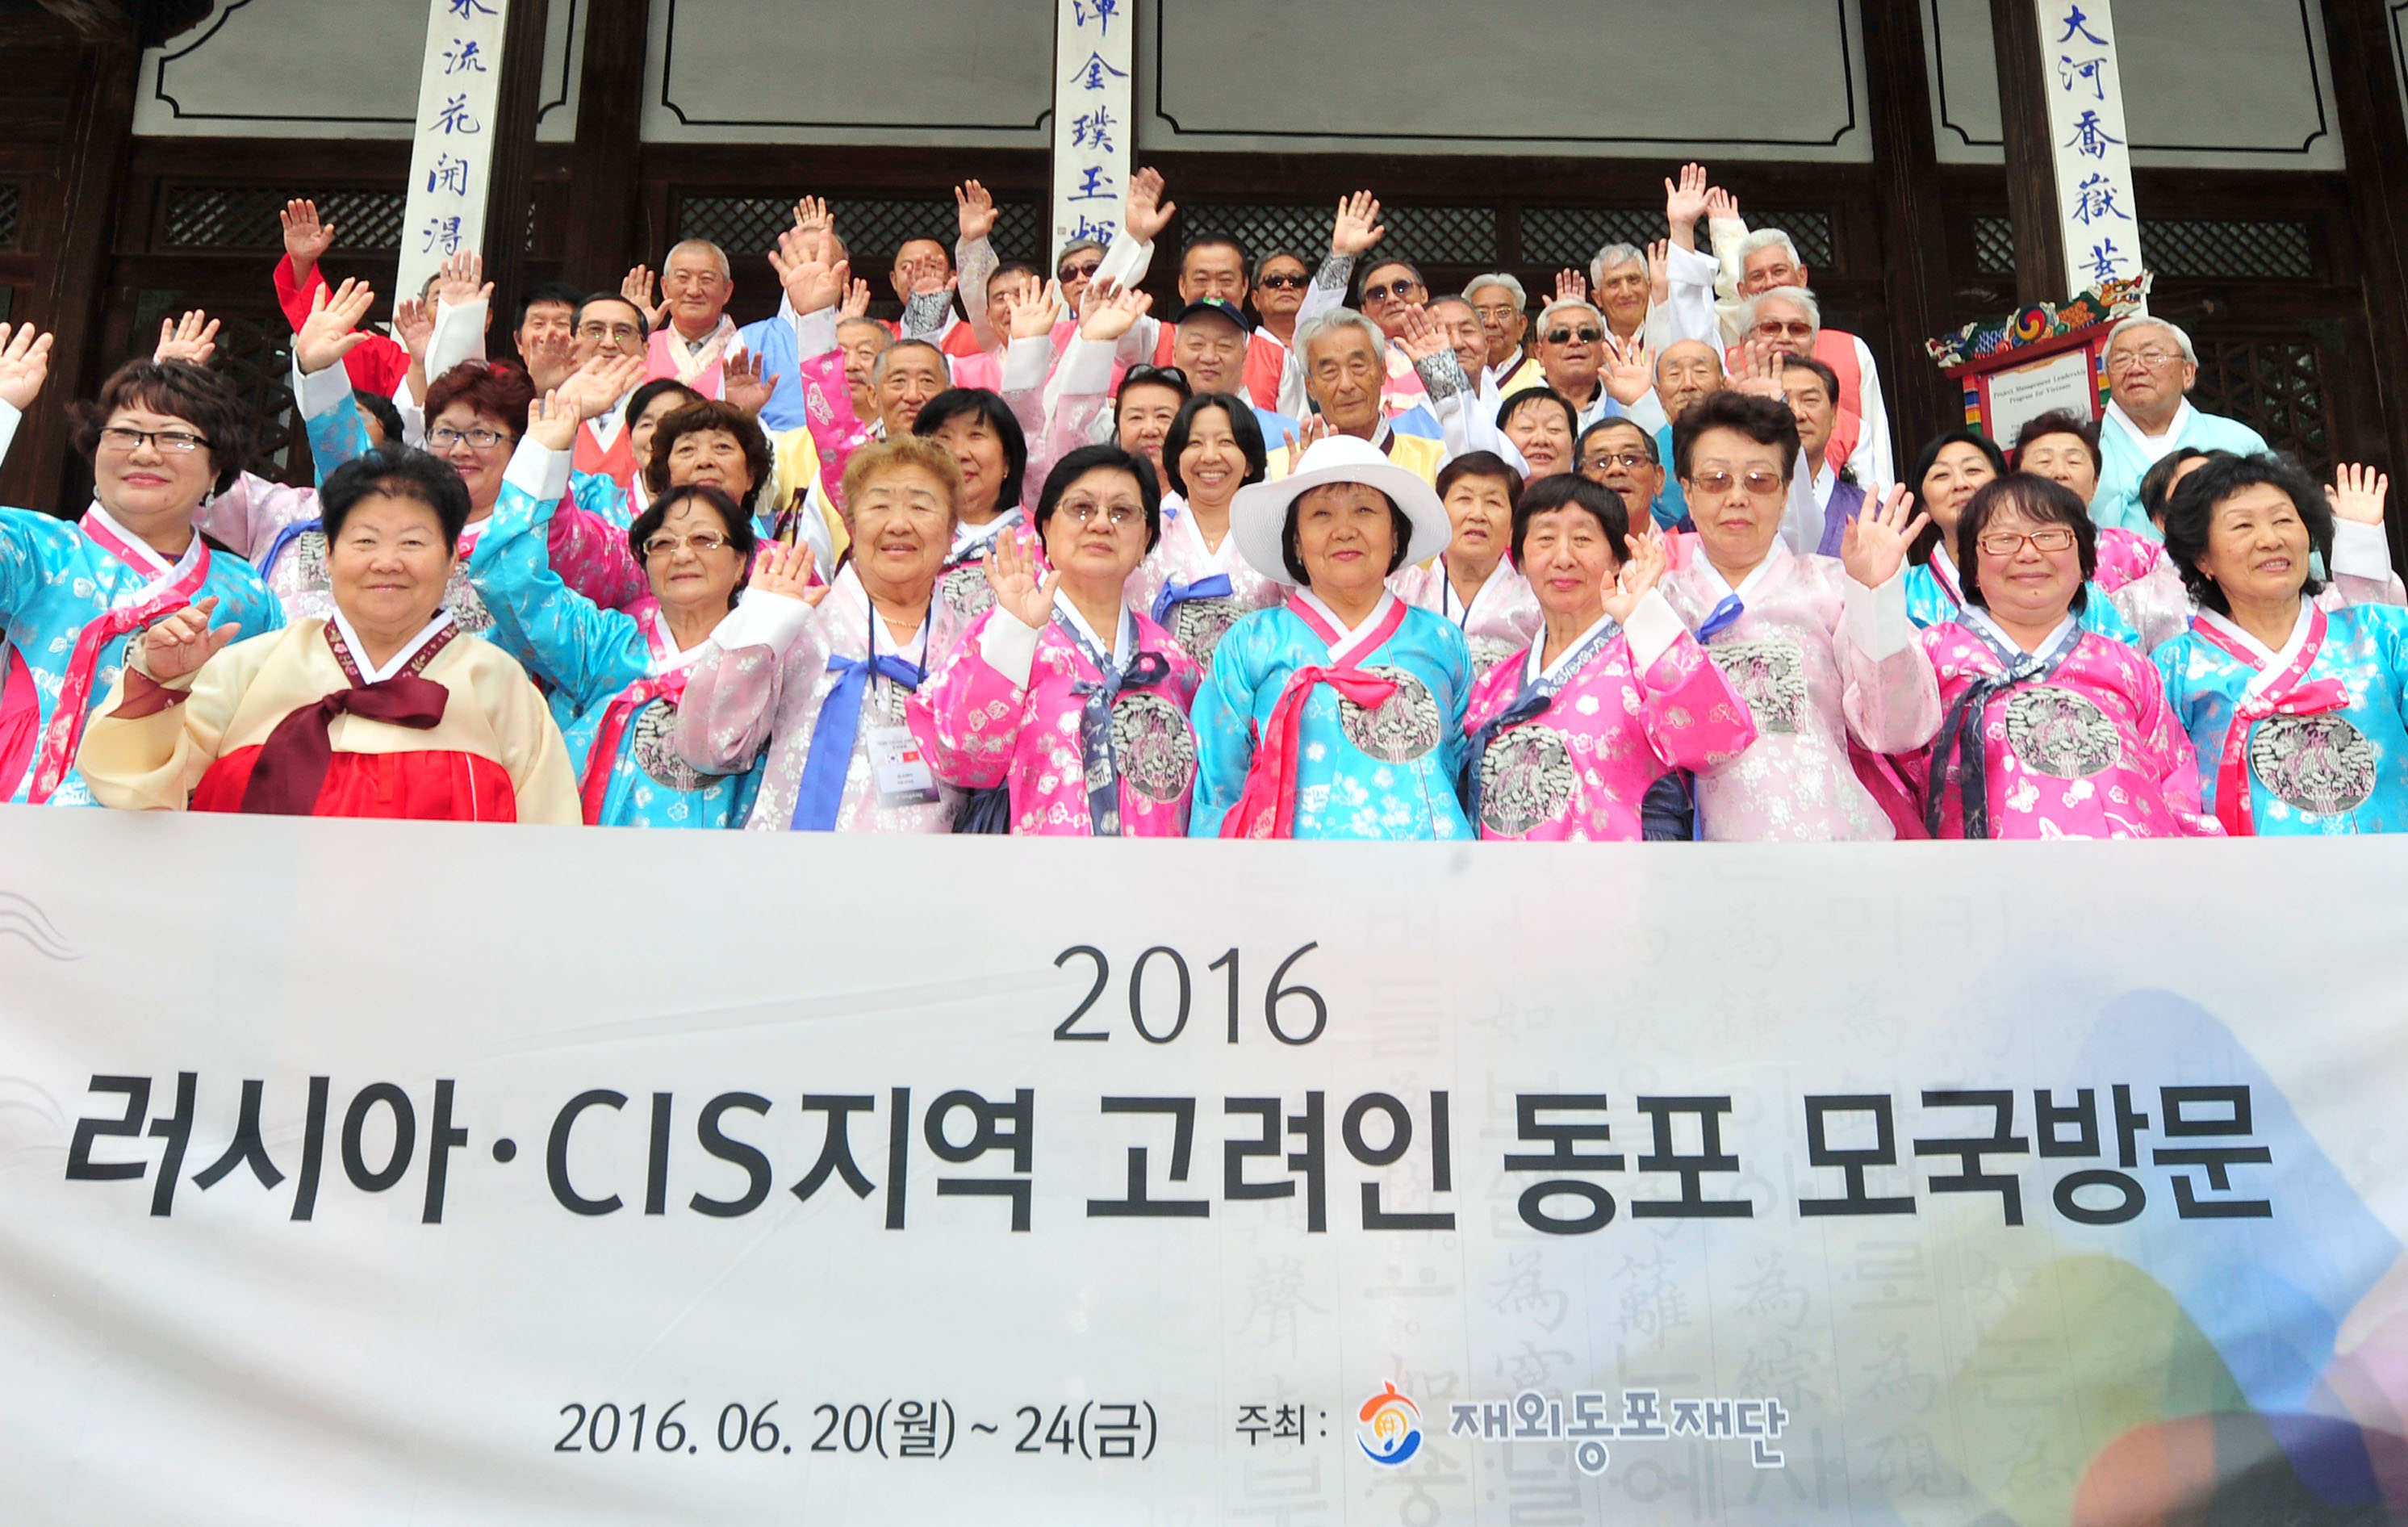 러시아CIS지역동포초청사업_처음온 한국에서 처음 입어보는 한복! 즐겁고 행복합니다.jpg